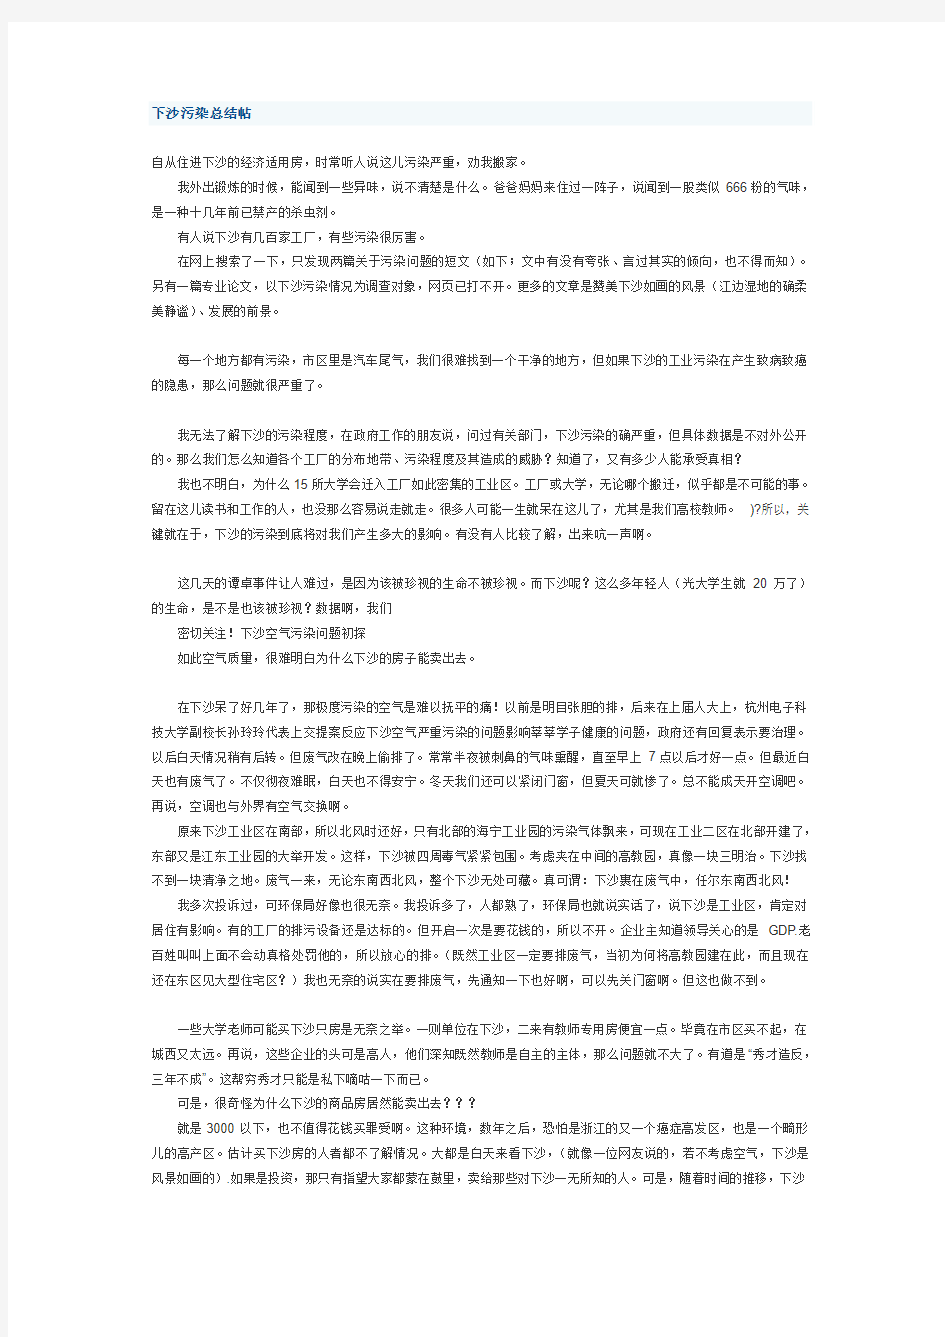 杭州下沙污染总结帖20131225